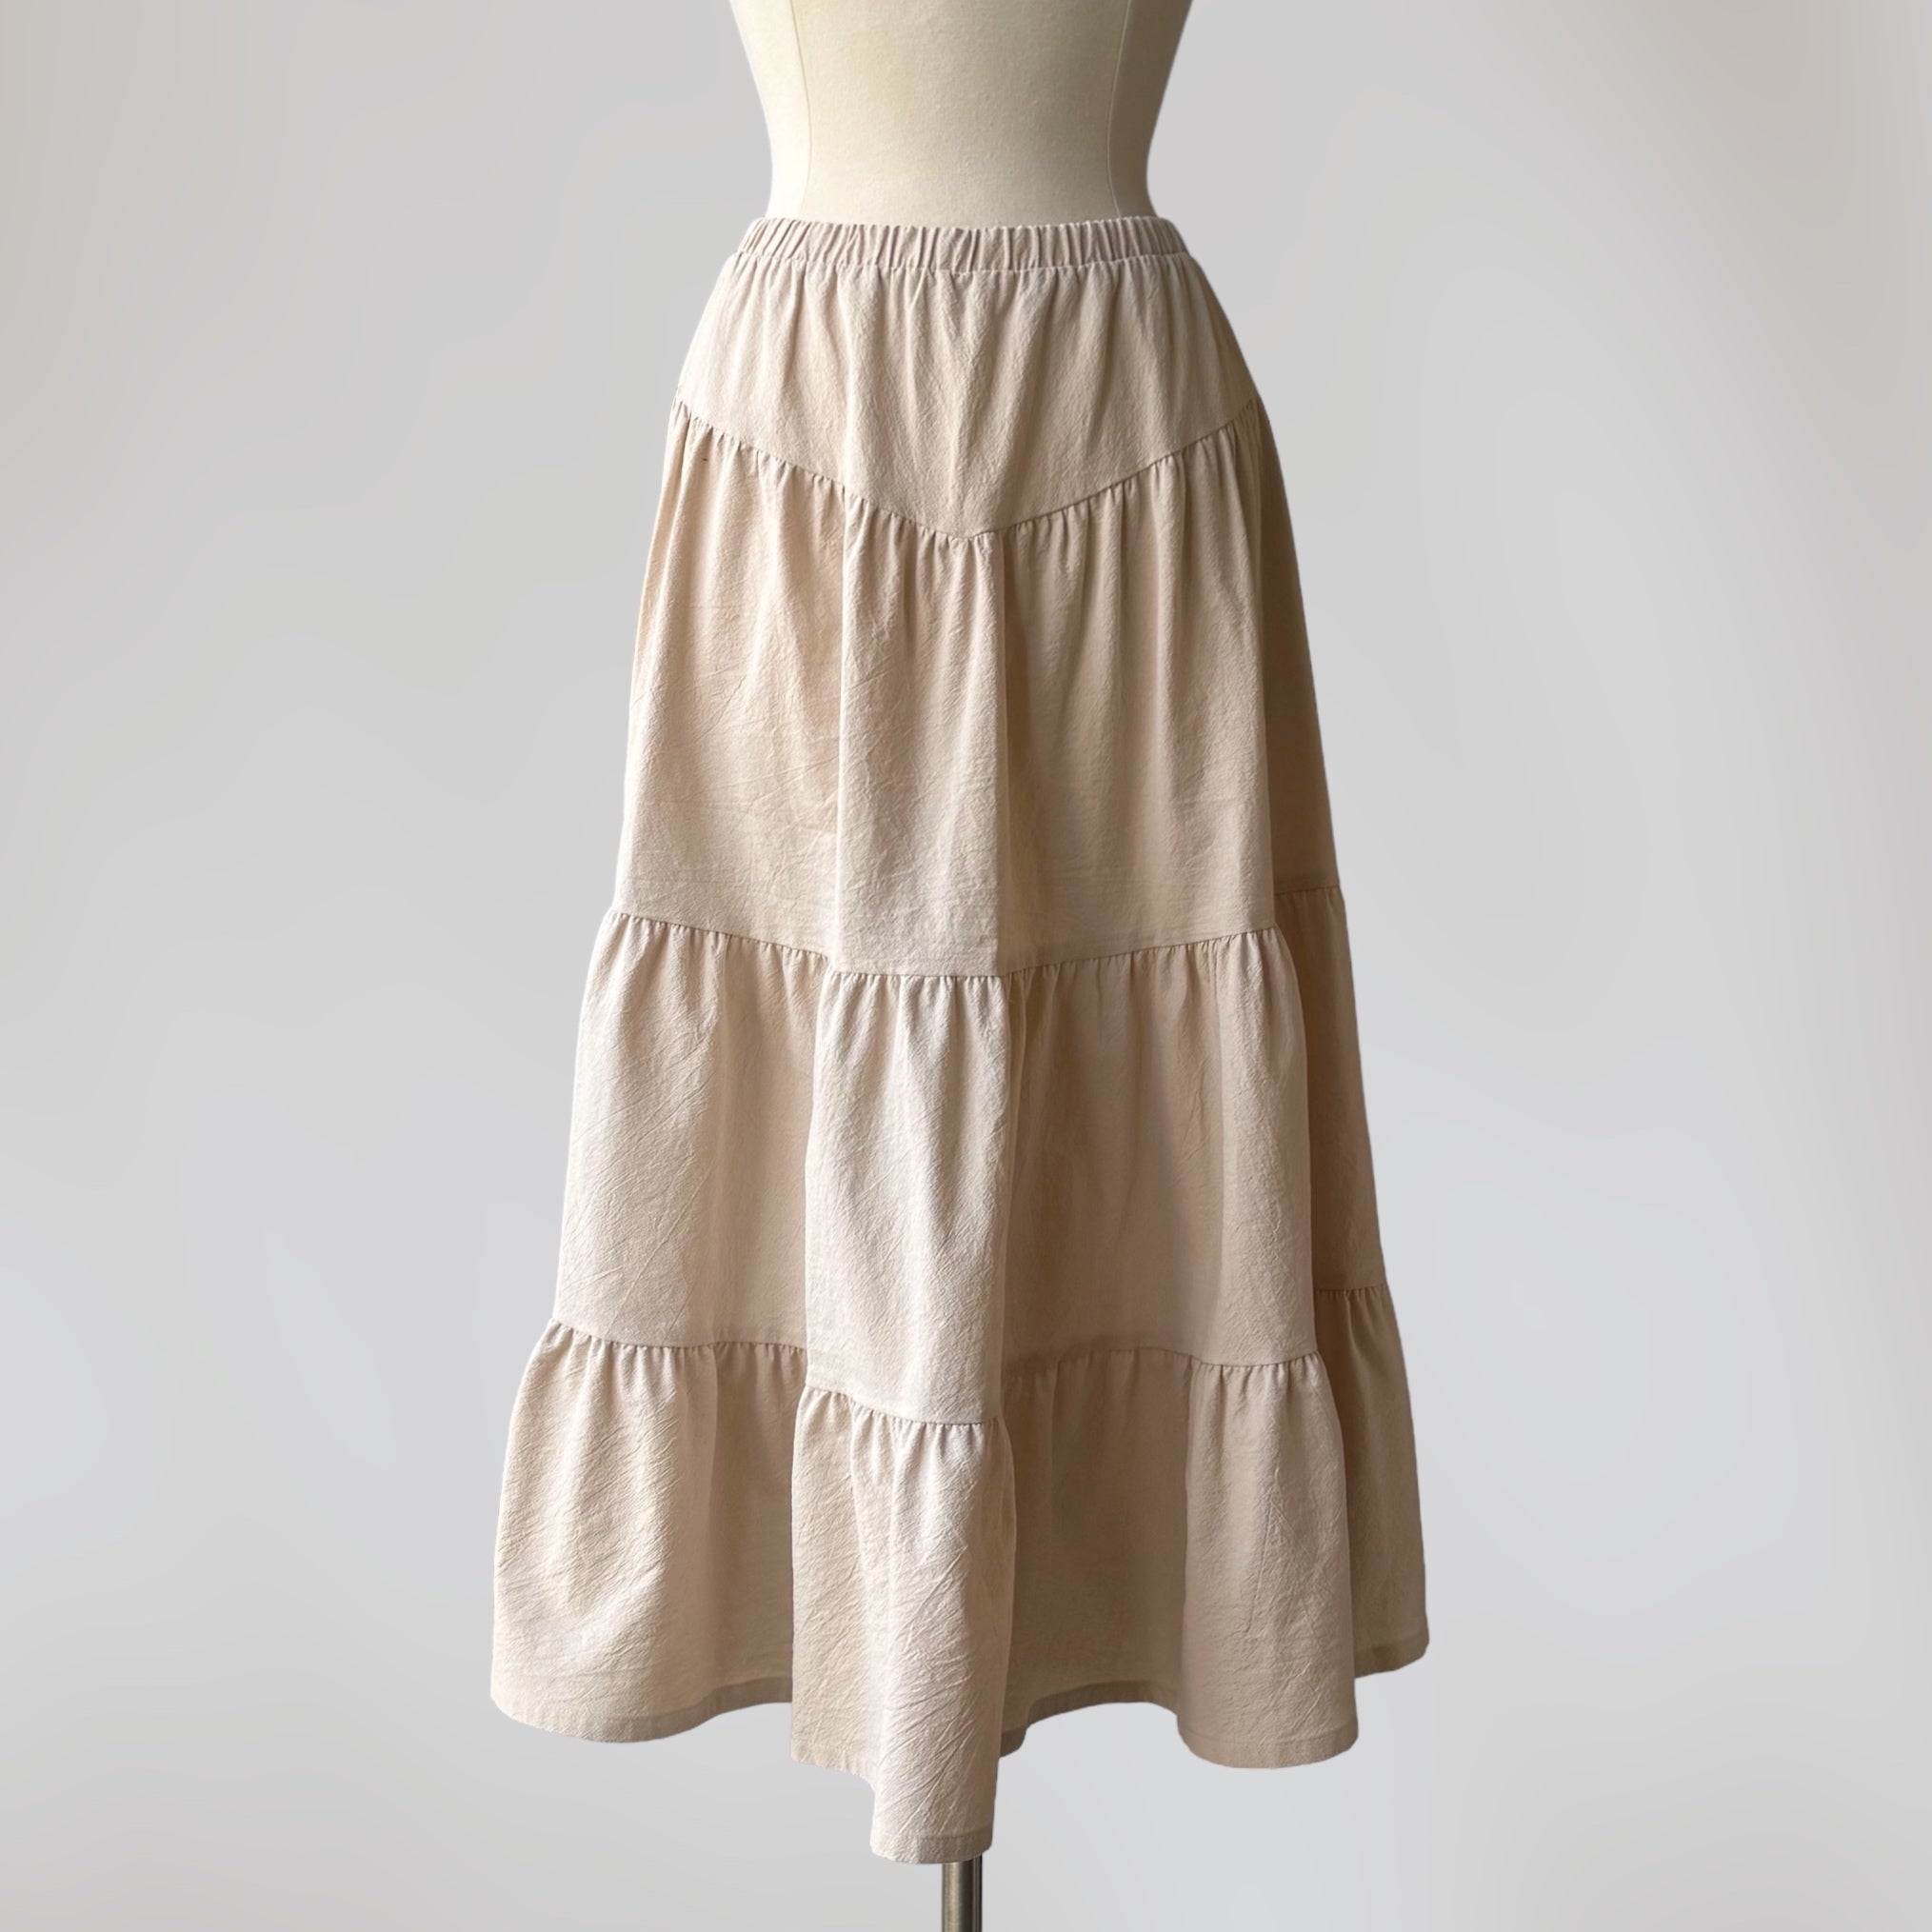 Richelle Skirt